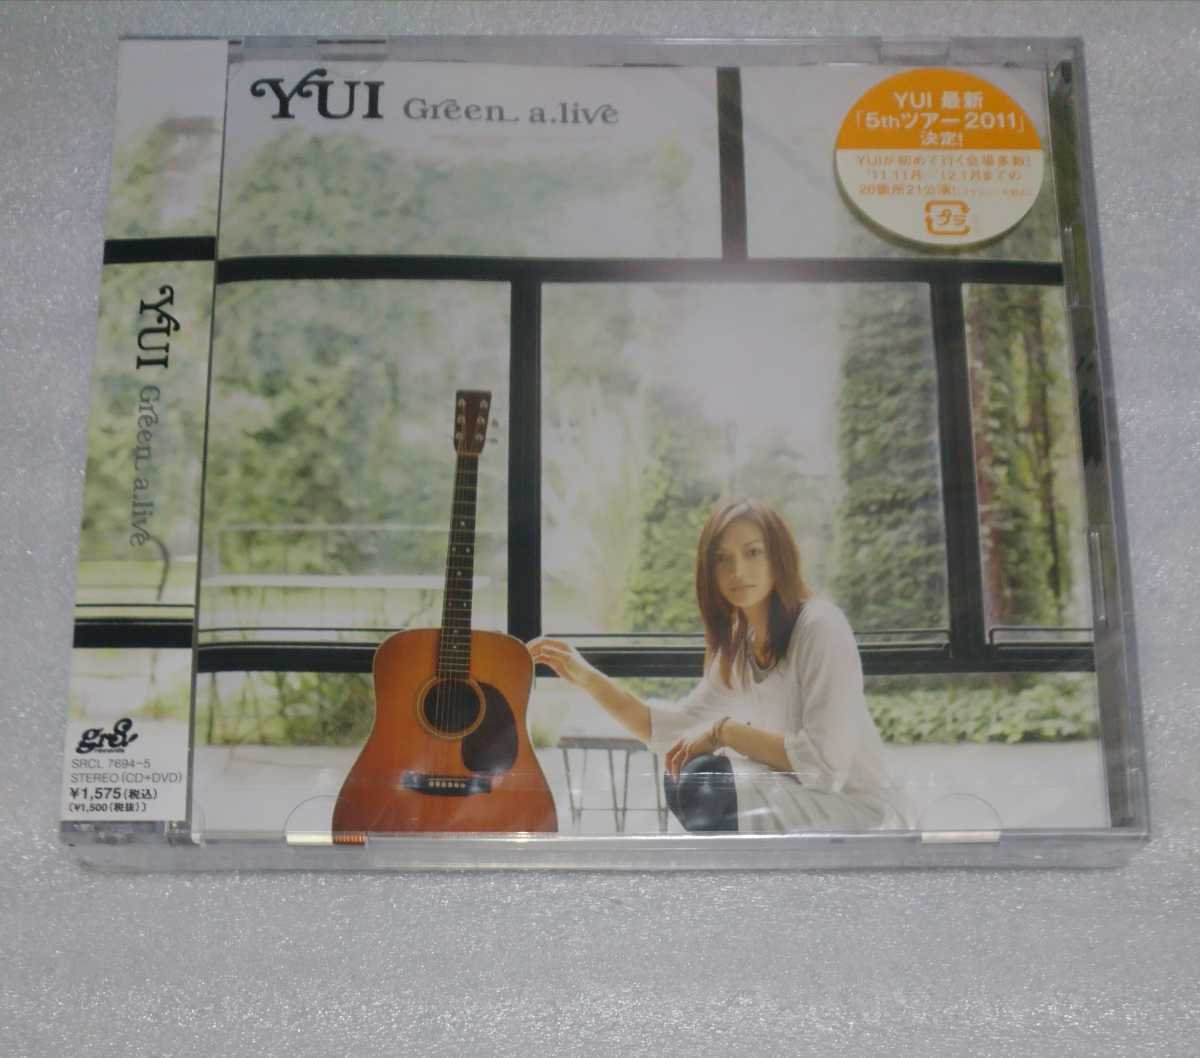 未開封含YUI初回限定盤DVD付 シングル CD 3枚 映画主題歌バラード LOVE & TRUTH HELLO アコースティック収録 Green a.live NHKテーマ fight_※1枚は未開封です。